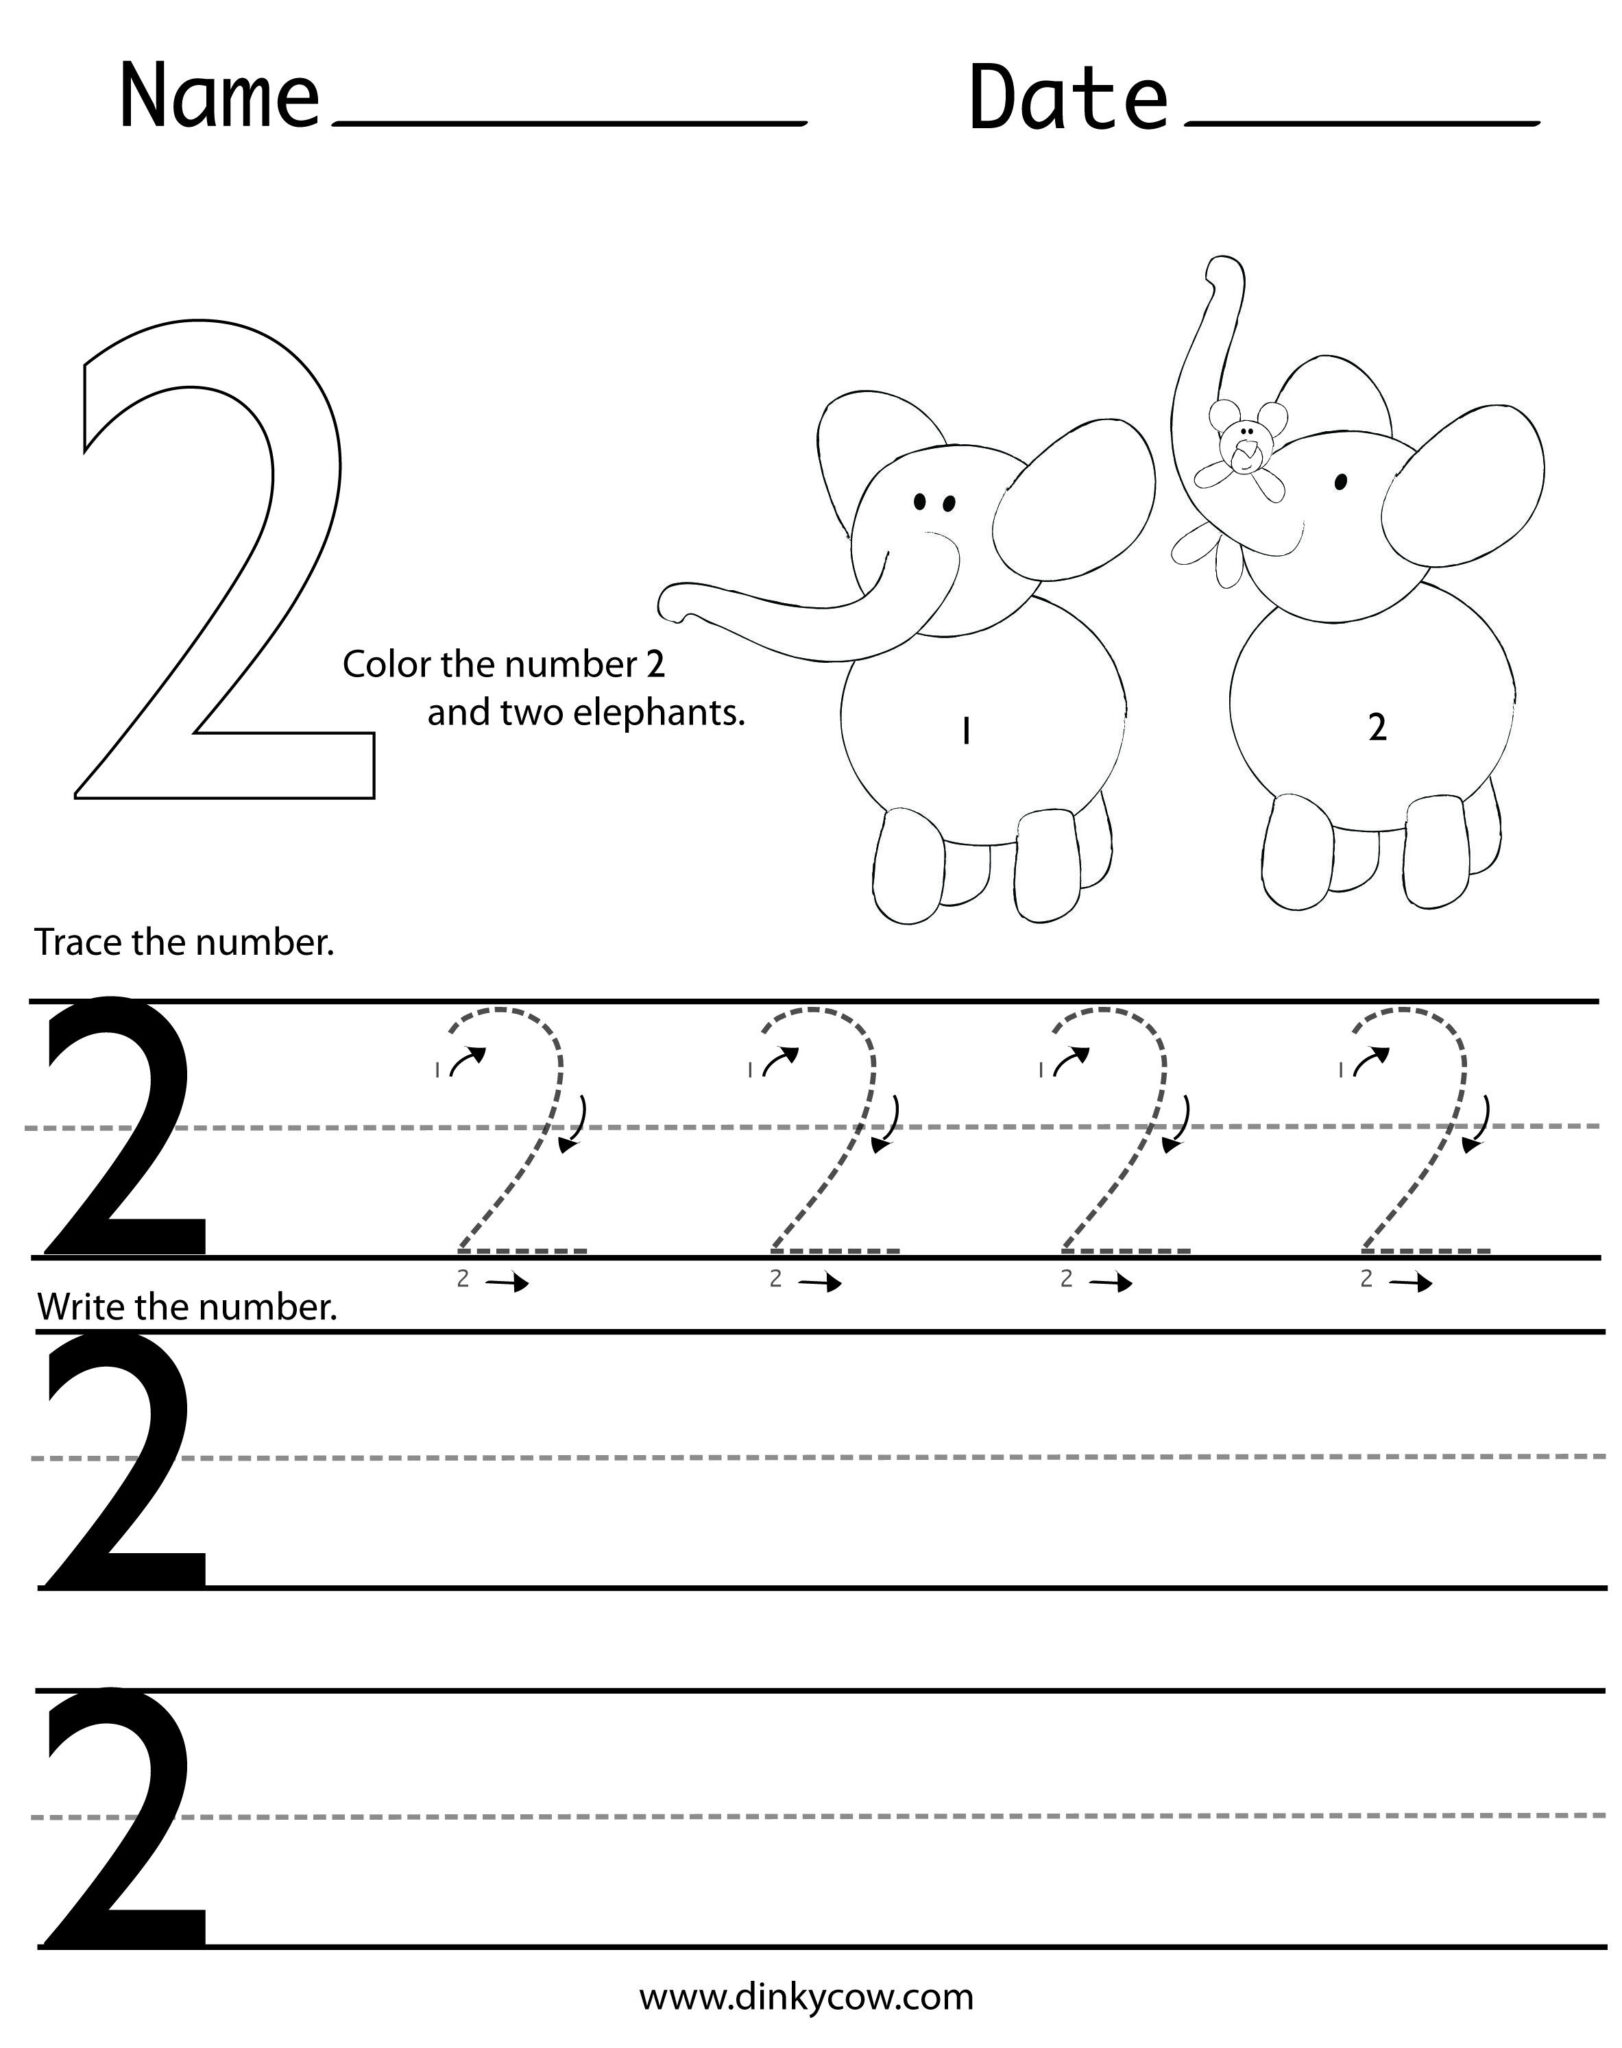 writing-numbers-writing-numbers-kindergarten-number-worksheets